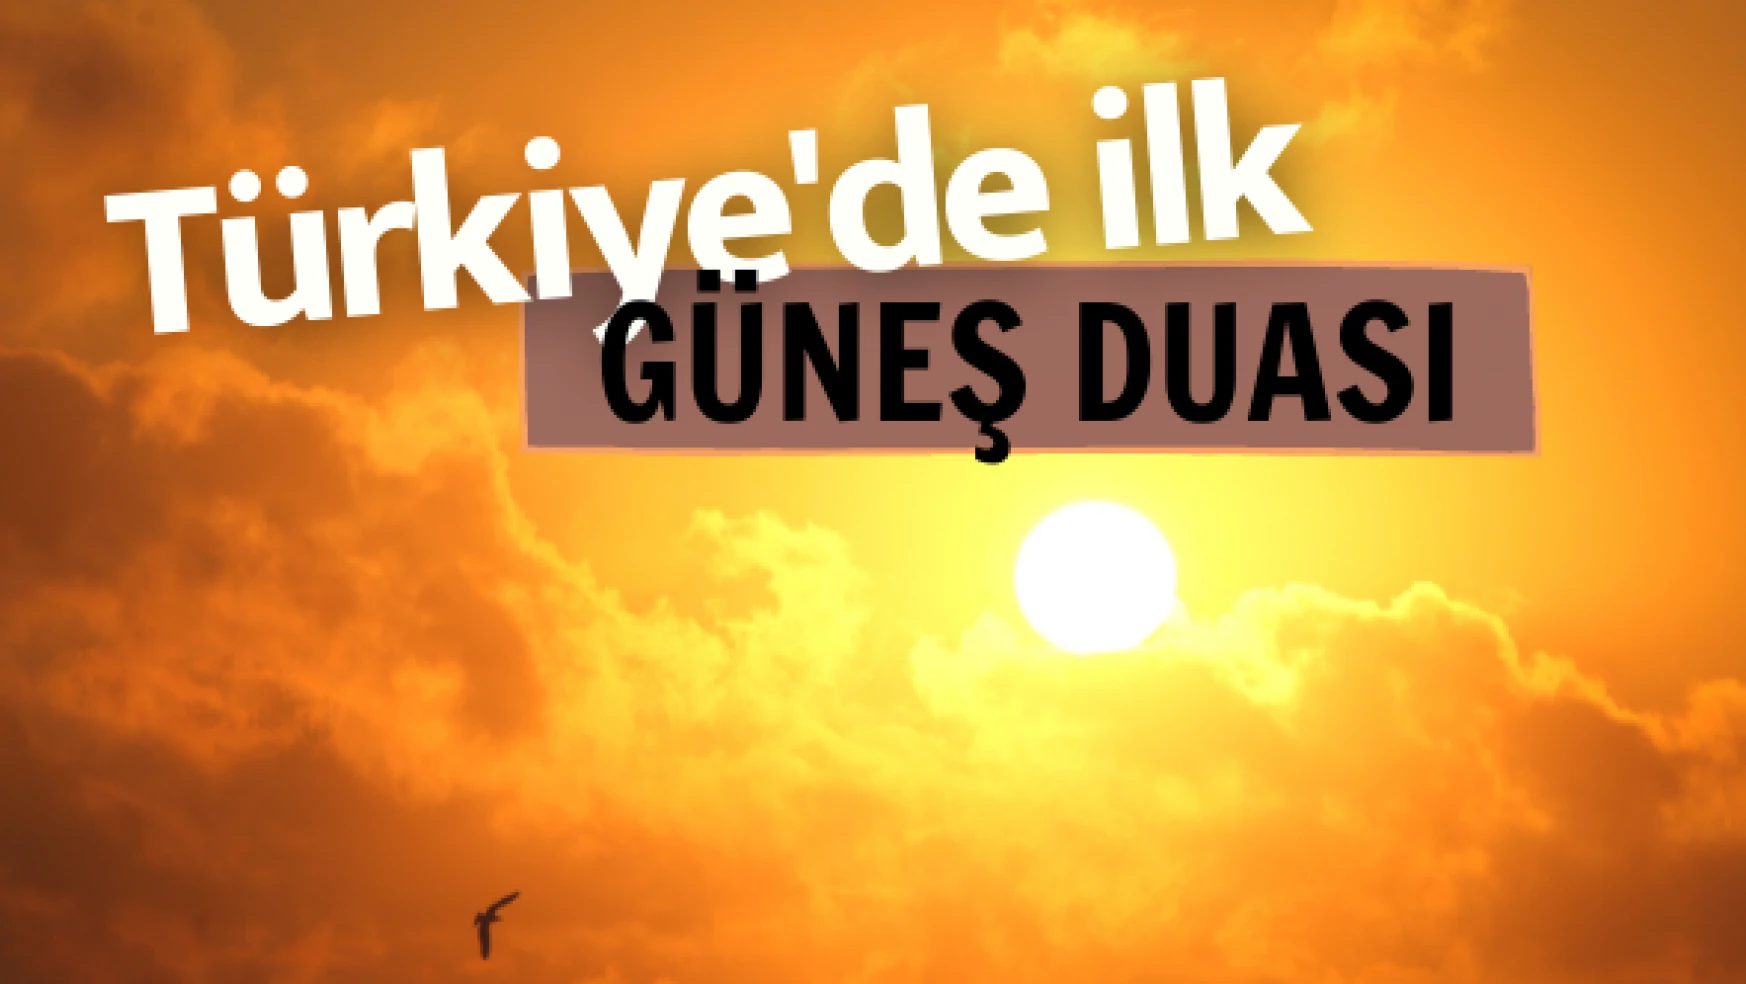 Türkiye'de ilk: güneş duası